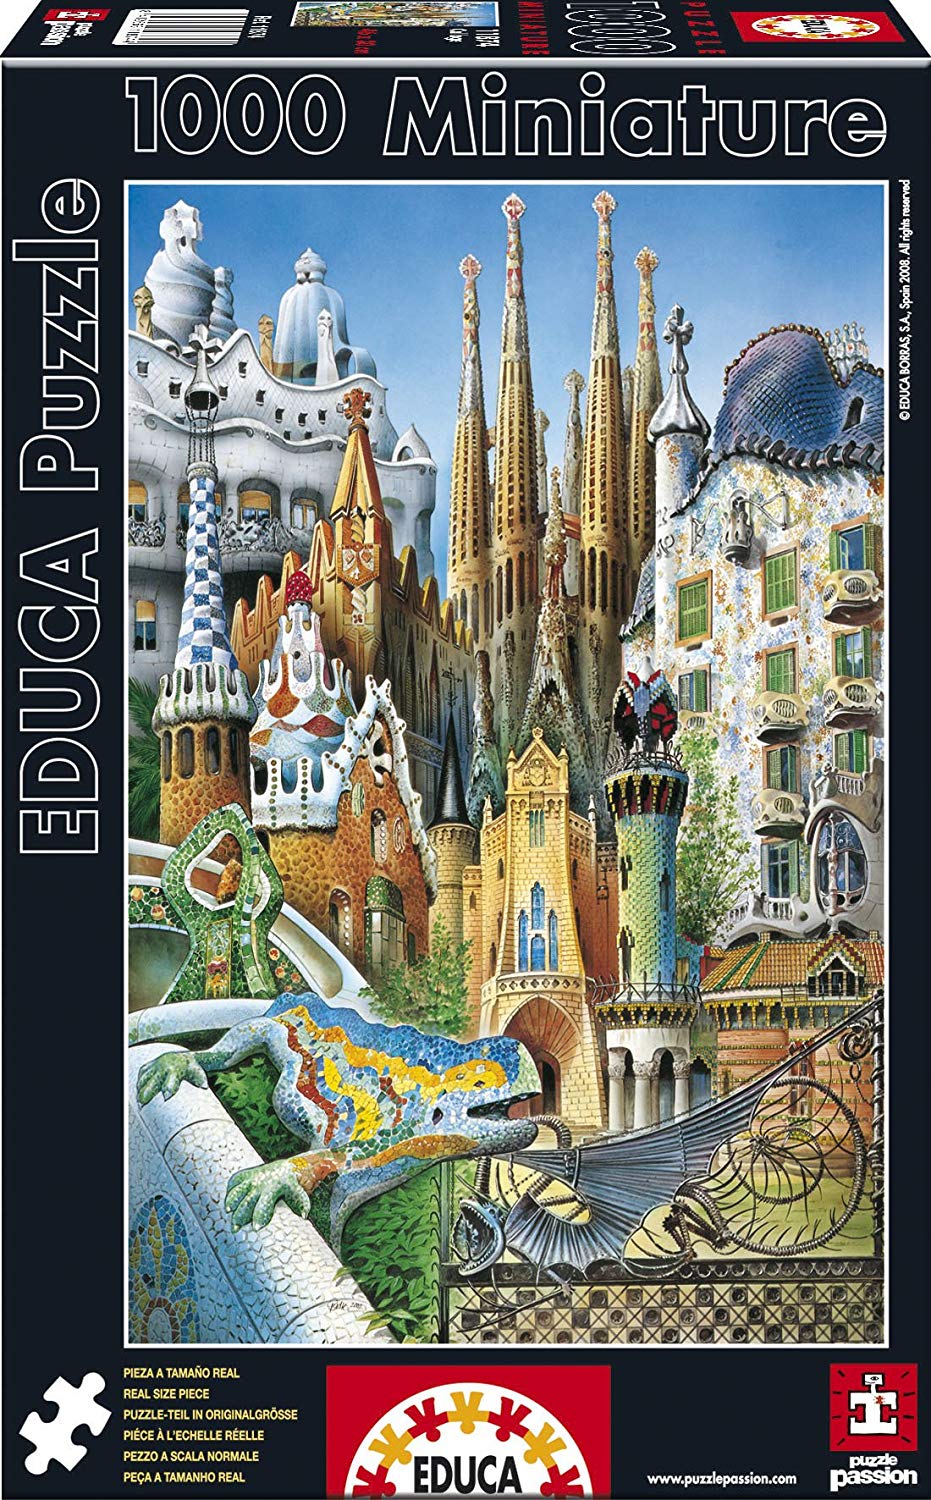 Educa Puzzle Collage Gaudi Miniature A